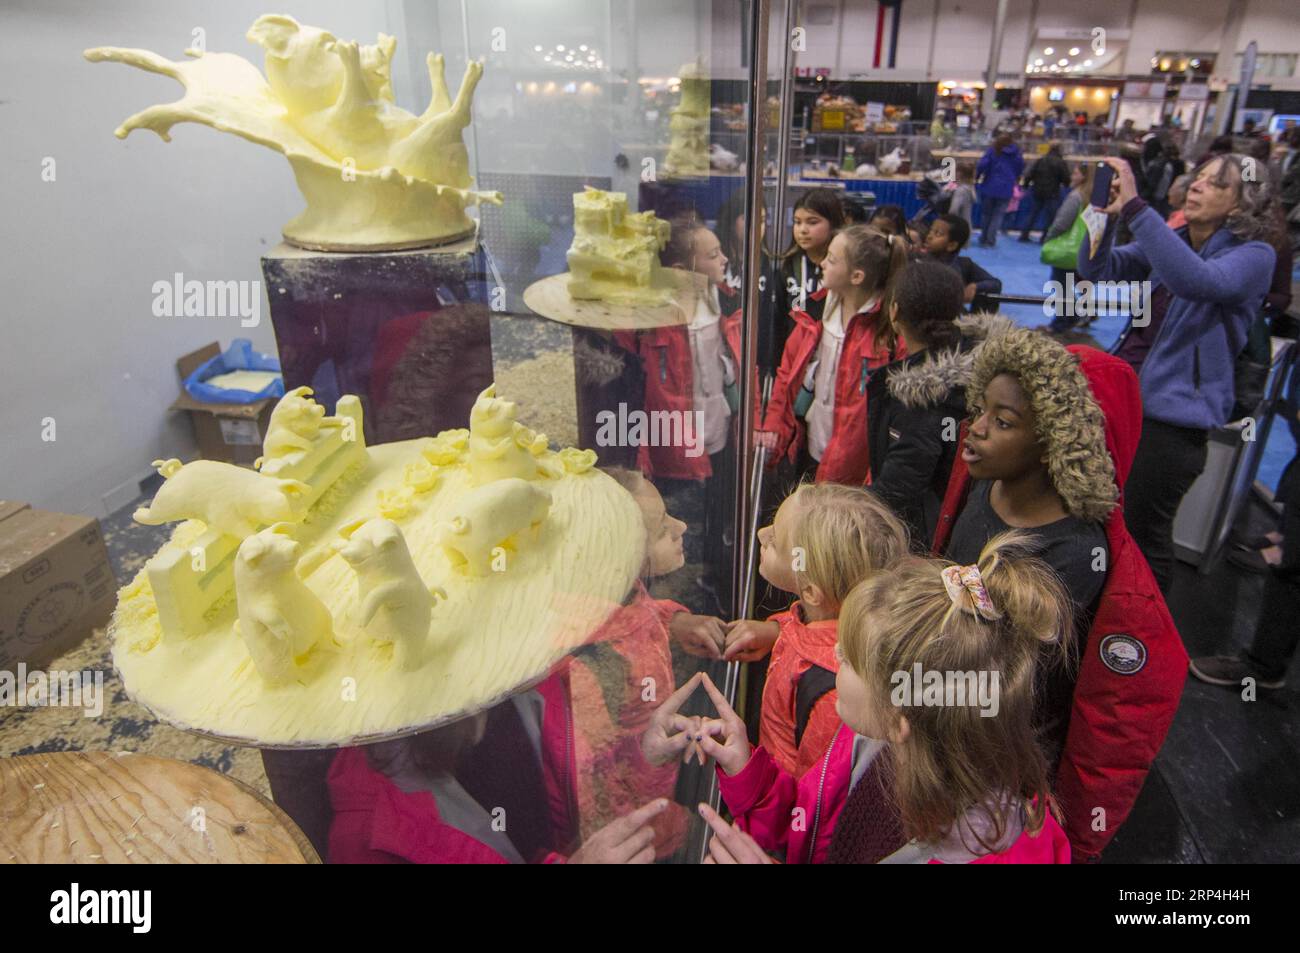 (181108) -- TORONTO, 8. November 2018 -- die Leute schauen sich Butterskulpturen während des Wettbewerbs Butter Sculpture der Royal Agricultural Winter Fair 2018 in Toronto, Kanada, am 8. November 2018 an. Die zehntägige jährliche Veranstaltung begann am 2. November und zeigte landwirtschaftliche Erzeugnisse, Viehzucht und neue landwirtschaftliche Technologien. ) KANADA-TORONTO-KÖNIGLICHE LANDWIRTSCHAFT WINTER FAIR BUTTER SKULPTUREN ZOUXZHENG PUBLICATIONXNOTXINXCHN Stockfoto